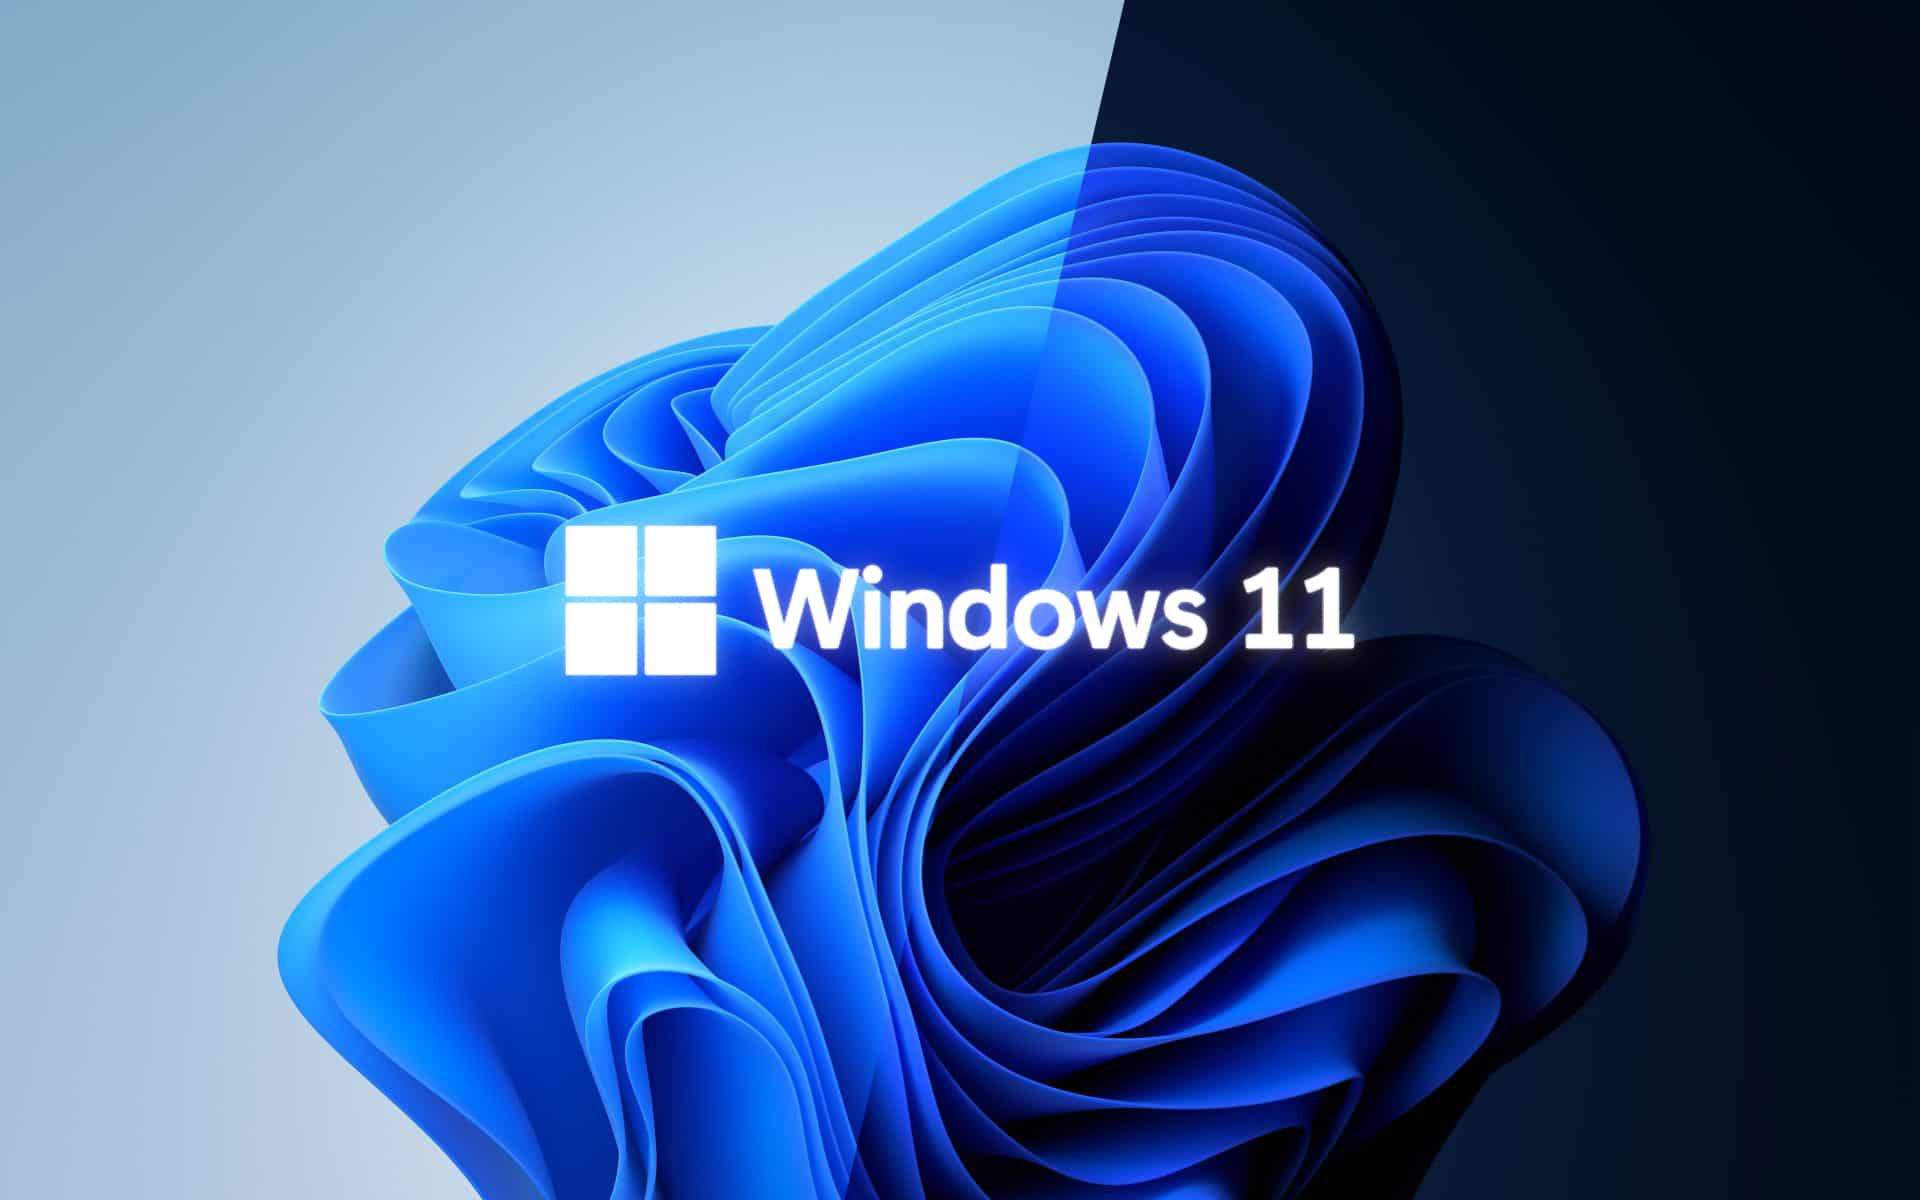 [31+] Windows 11 SE Wallpapers | WallpaperSafari